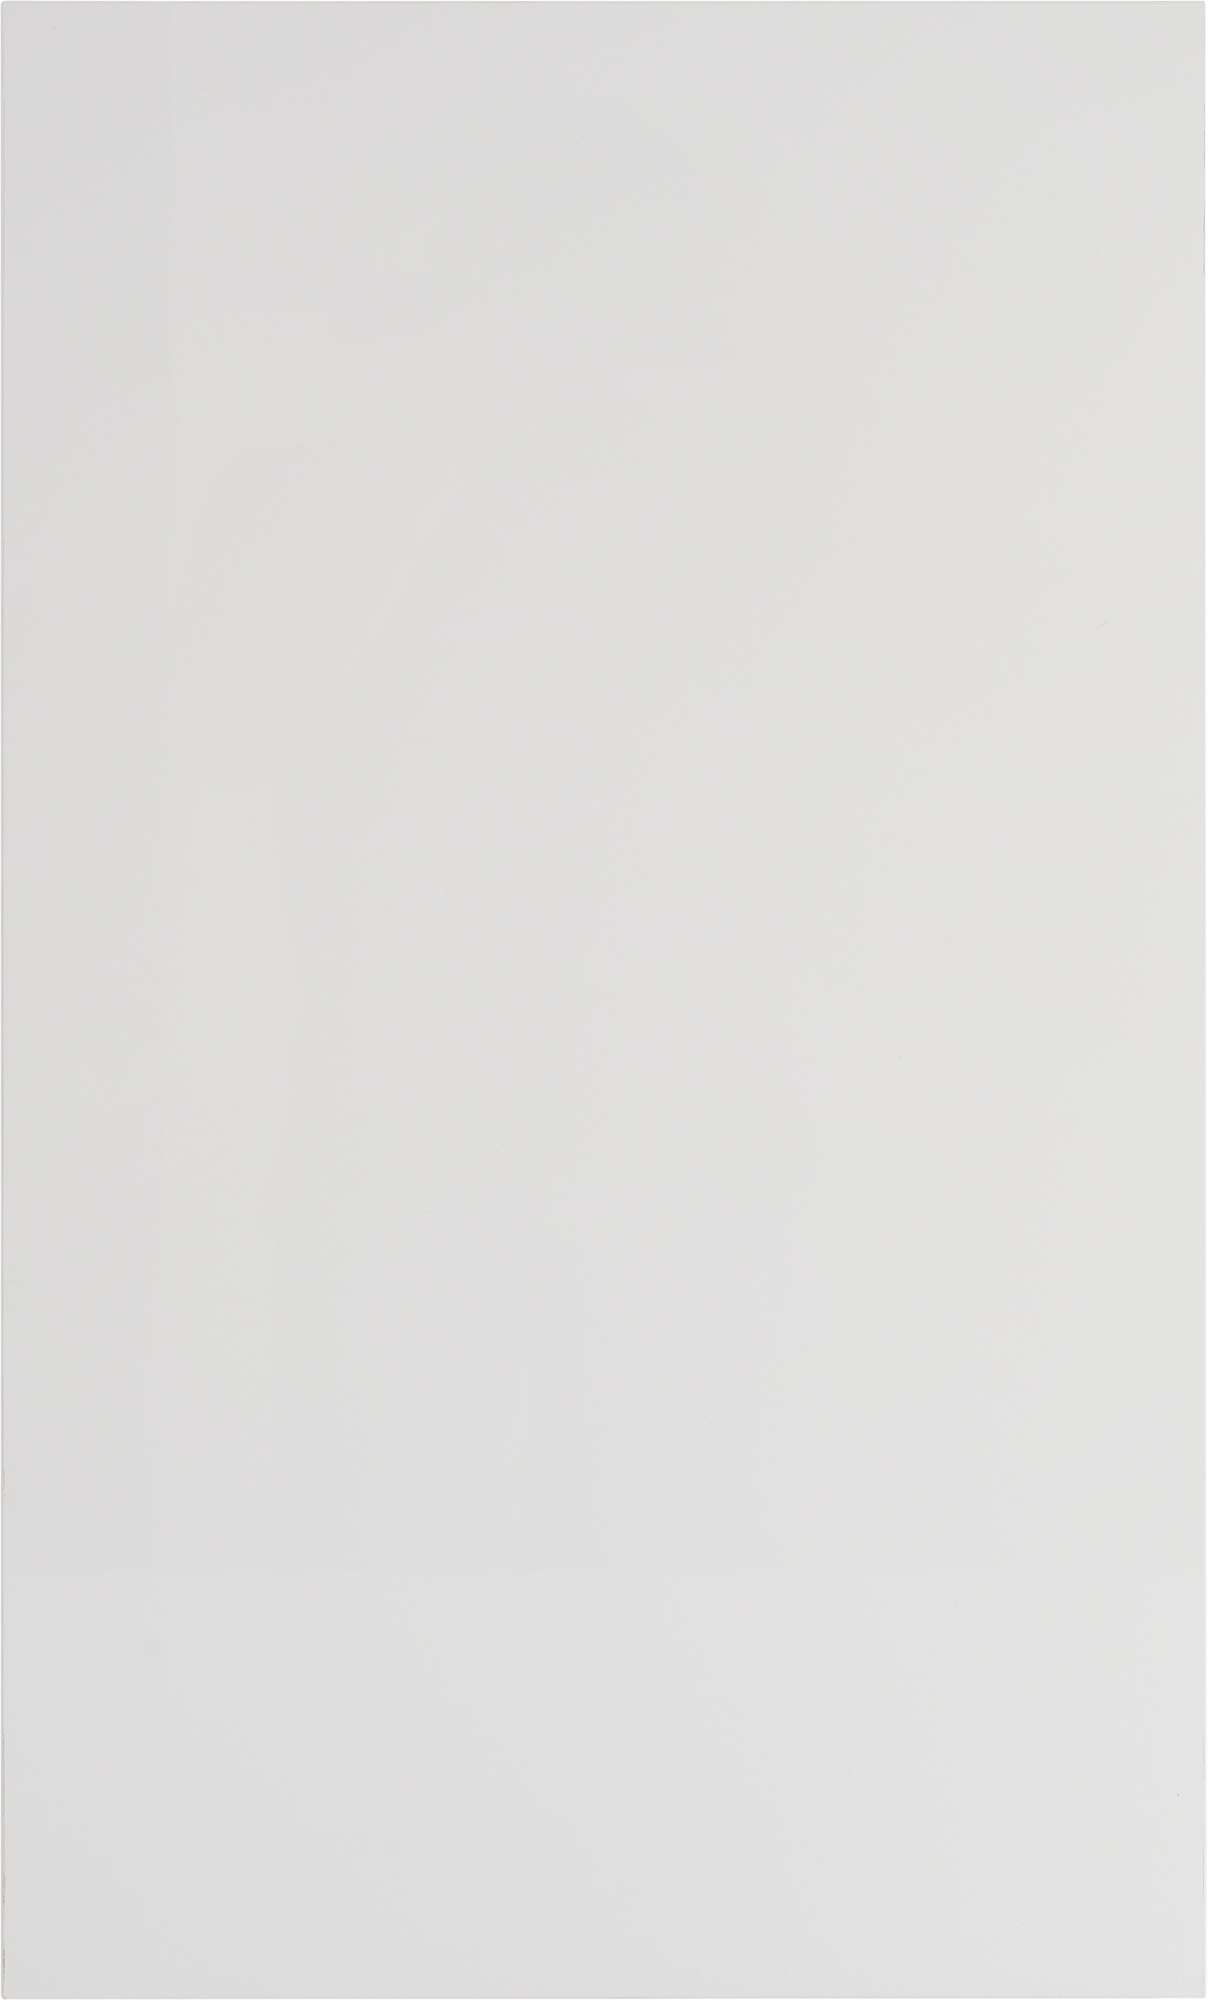 Frente de cajón de cocina atenas blanco brillo h 76.8 x l 45 cm